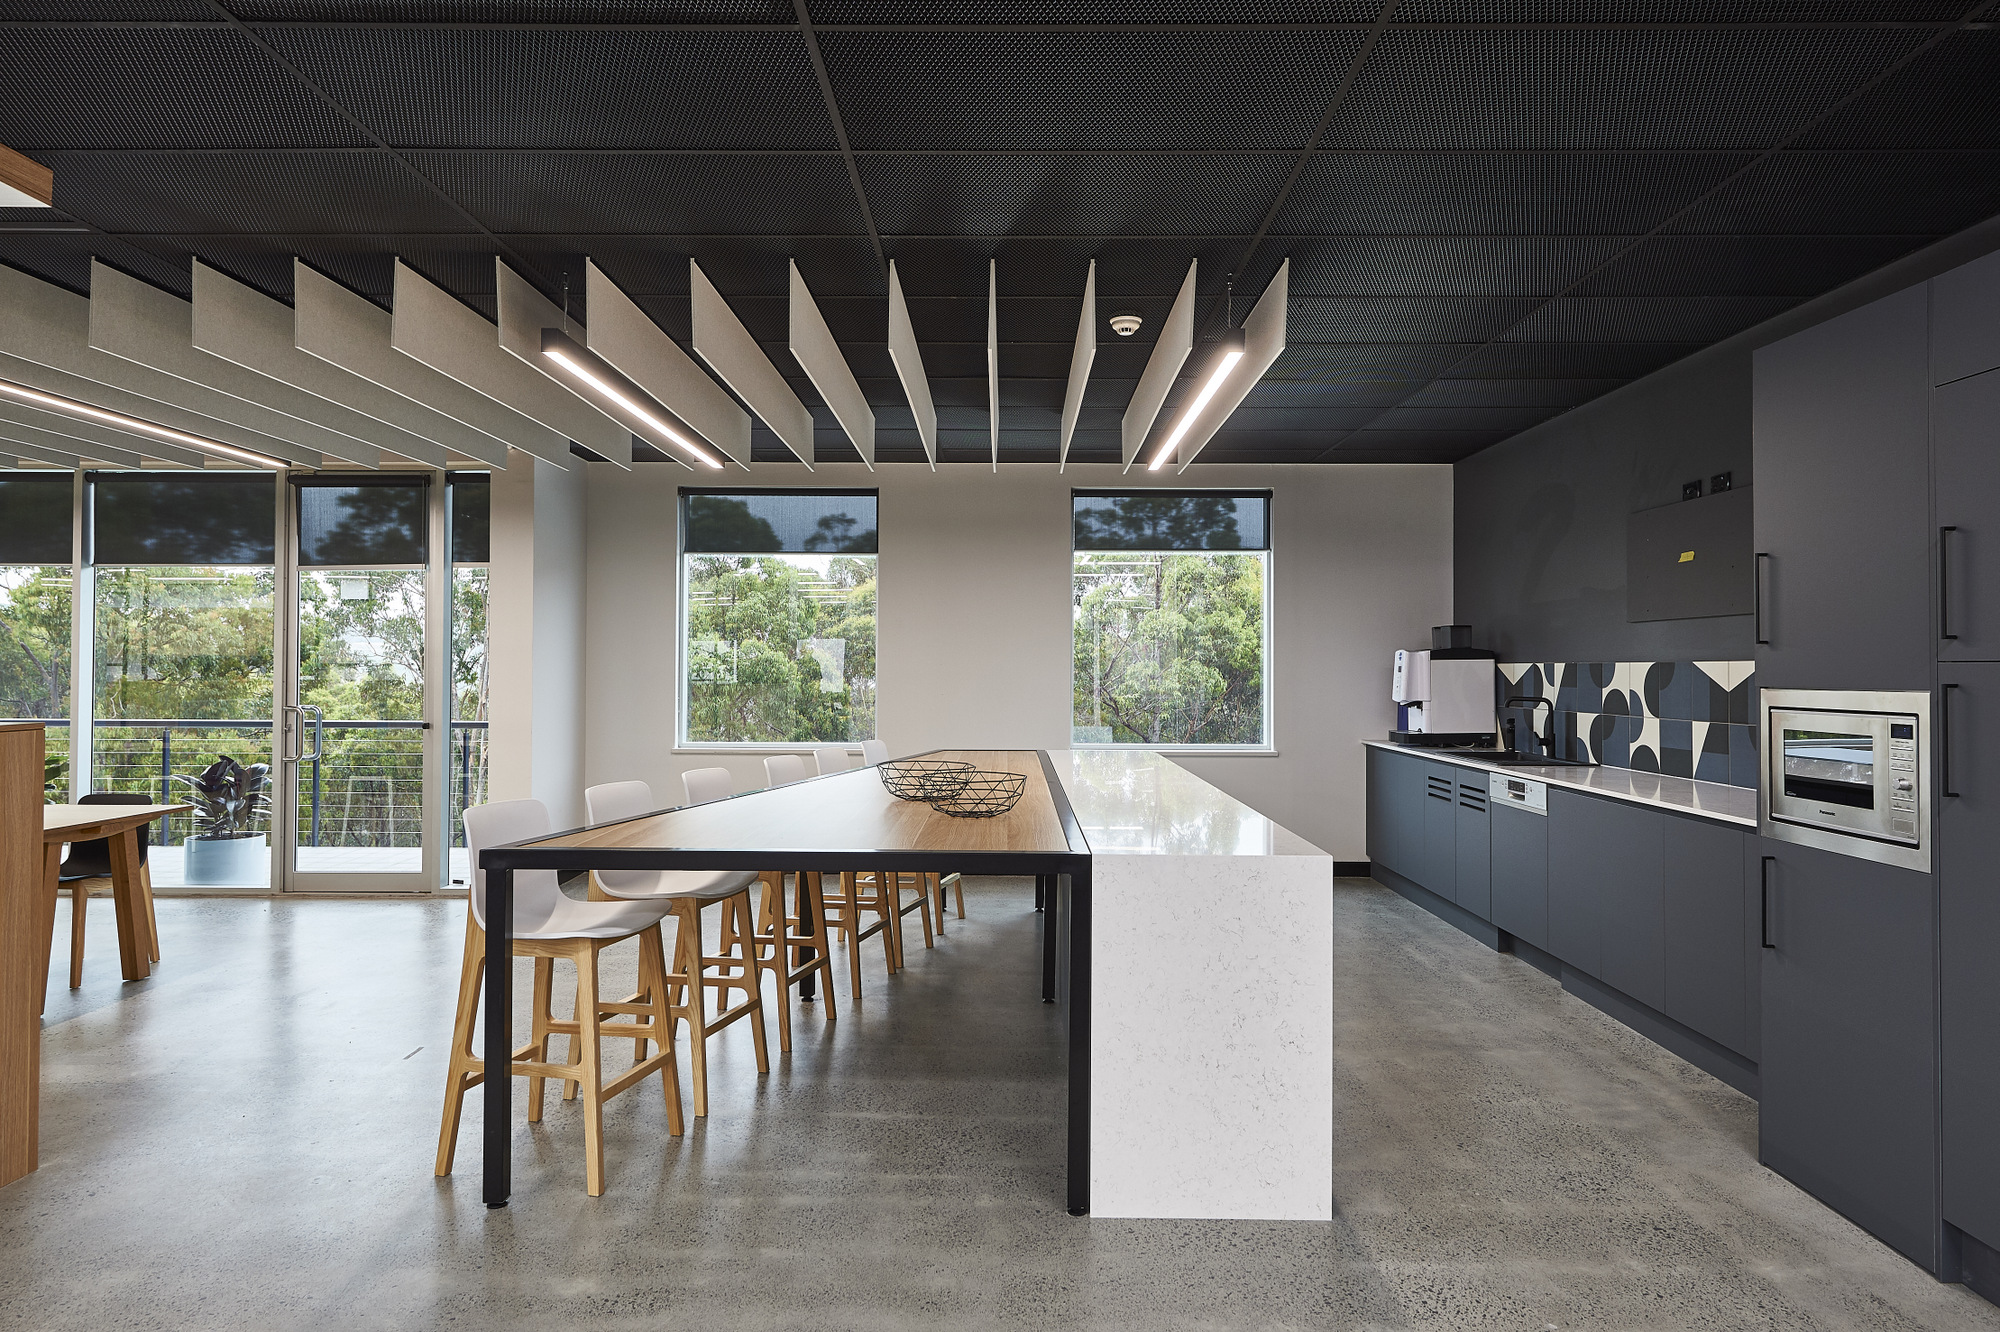 图片[4]|舍弗勒澳大利亚办事处-悉尼|ART-Arrakis | 建筑室内设计的创新与灵感